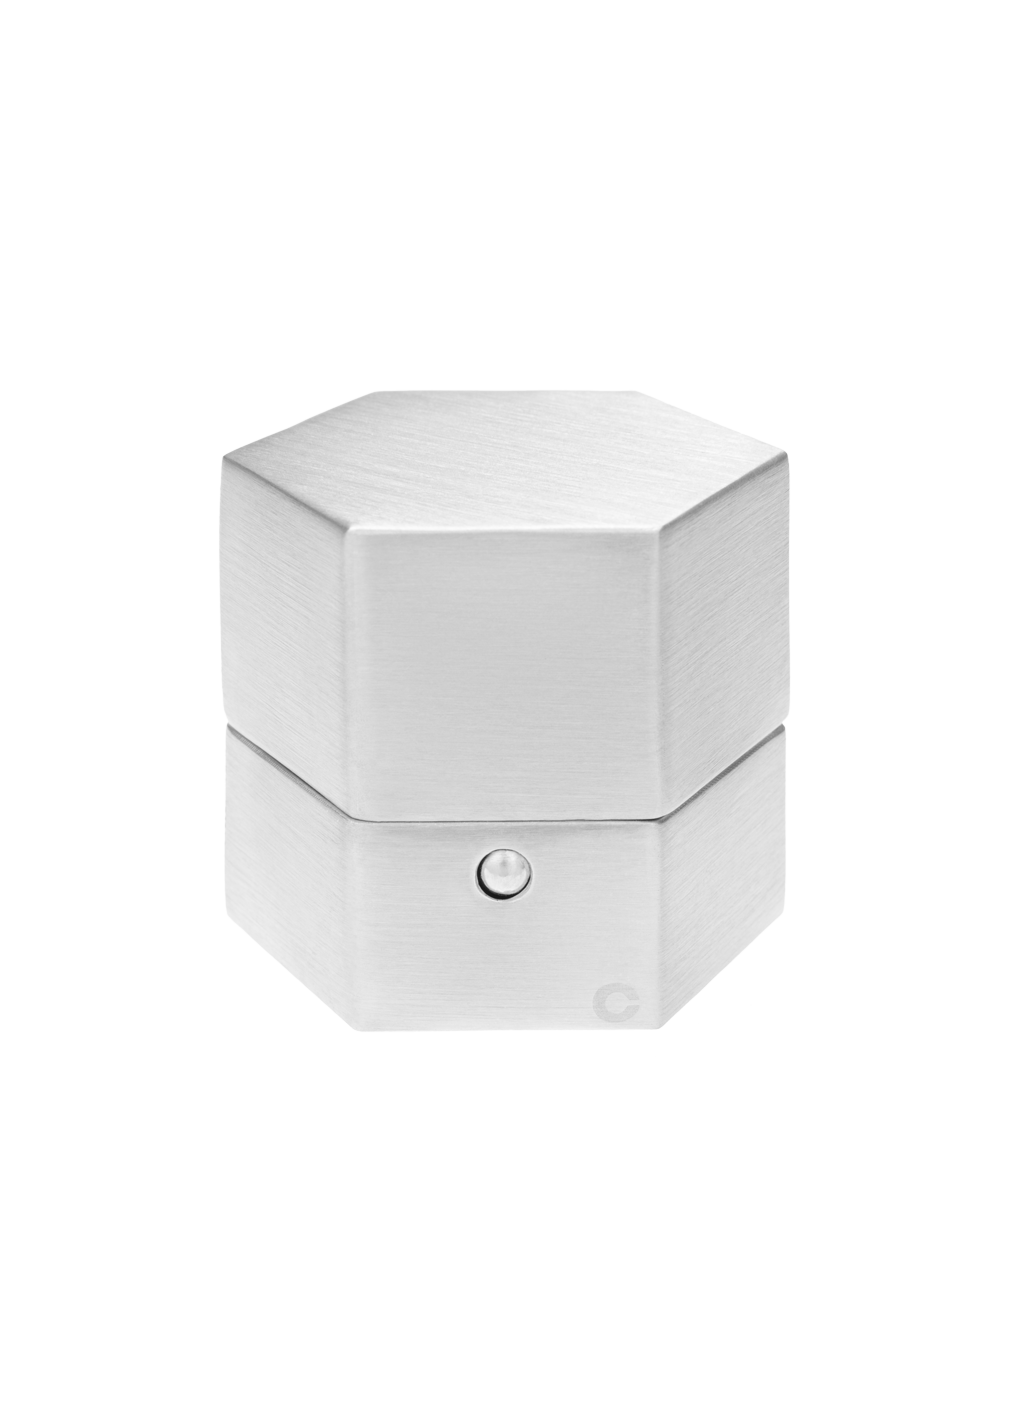 a caixa hexagonal em prata